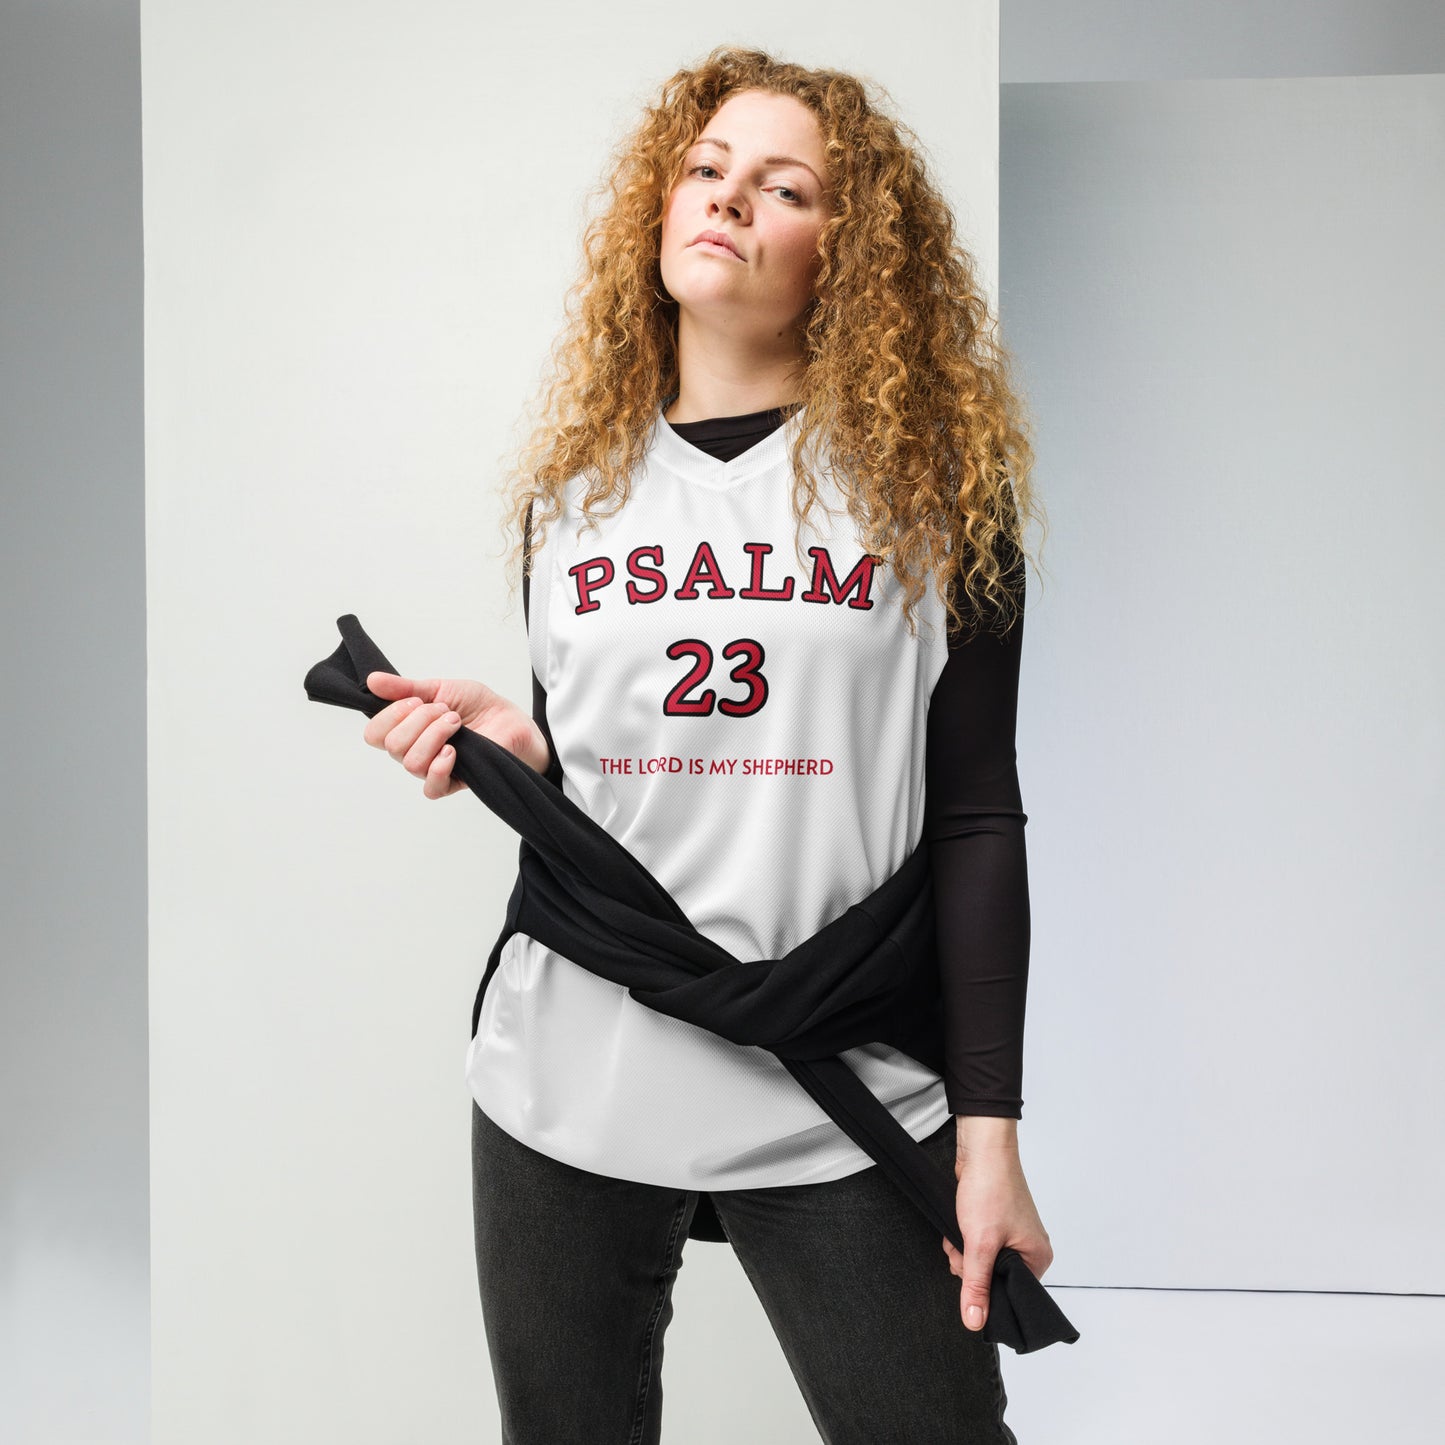 Psalm 23 Basketball Jersey